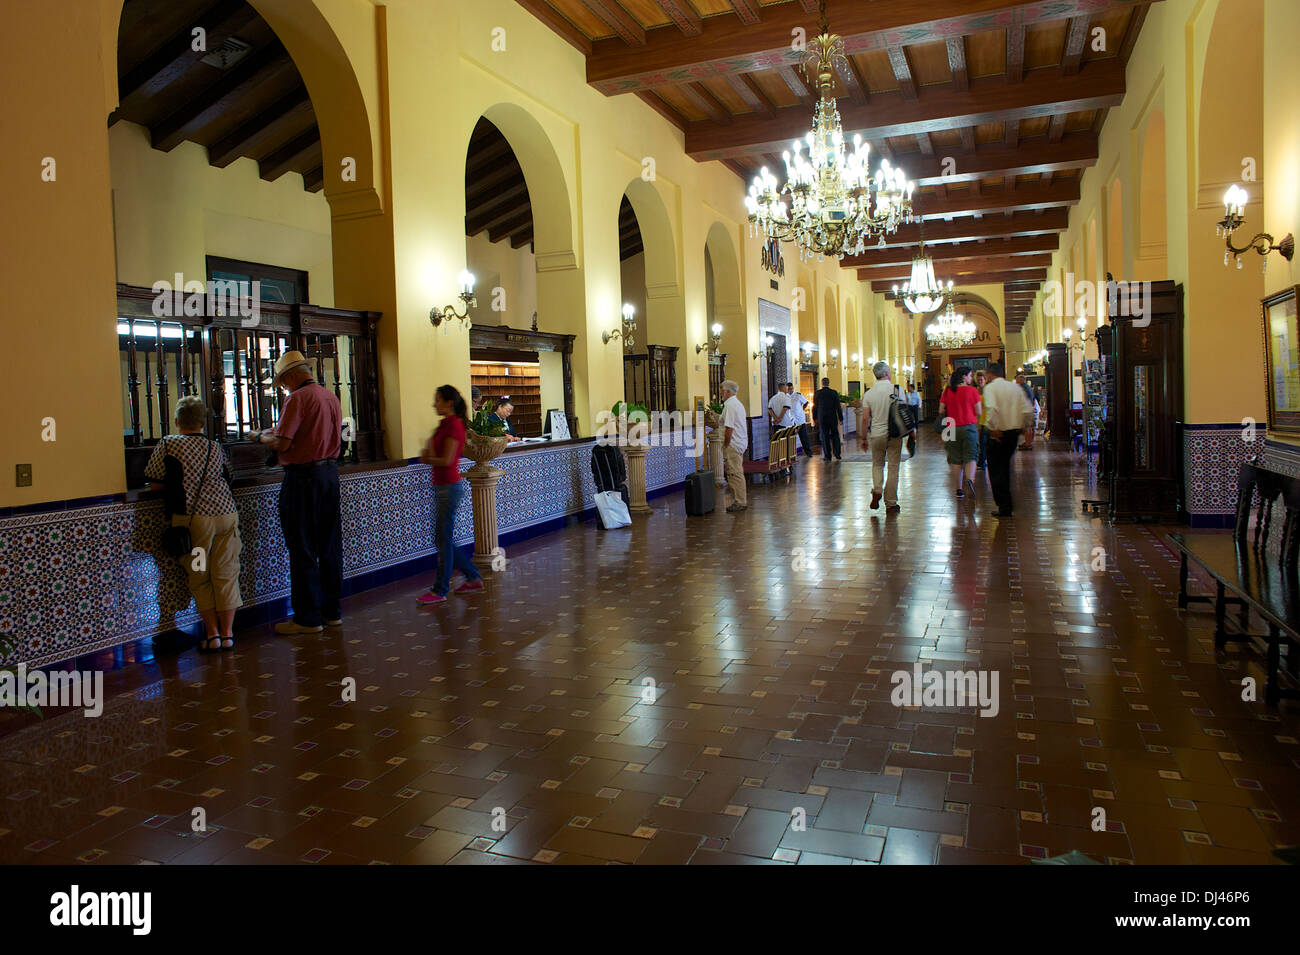 Lobby, Hotel Nacional, Havana, Cuba Stock Photo